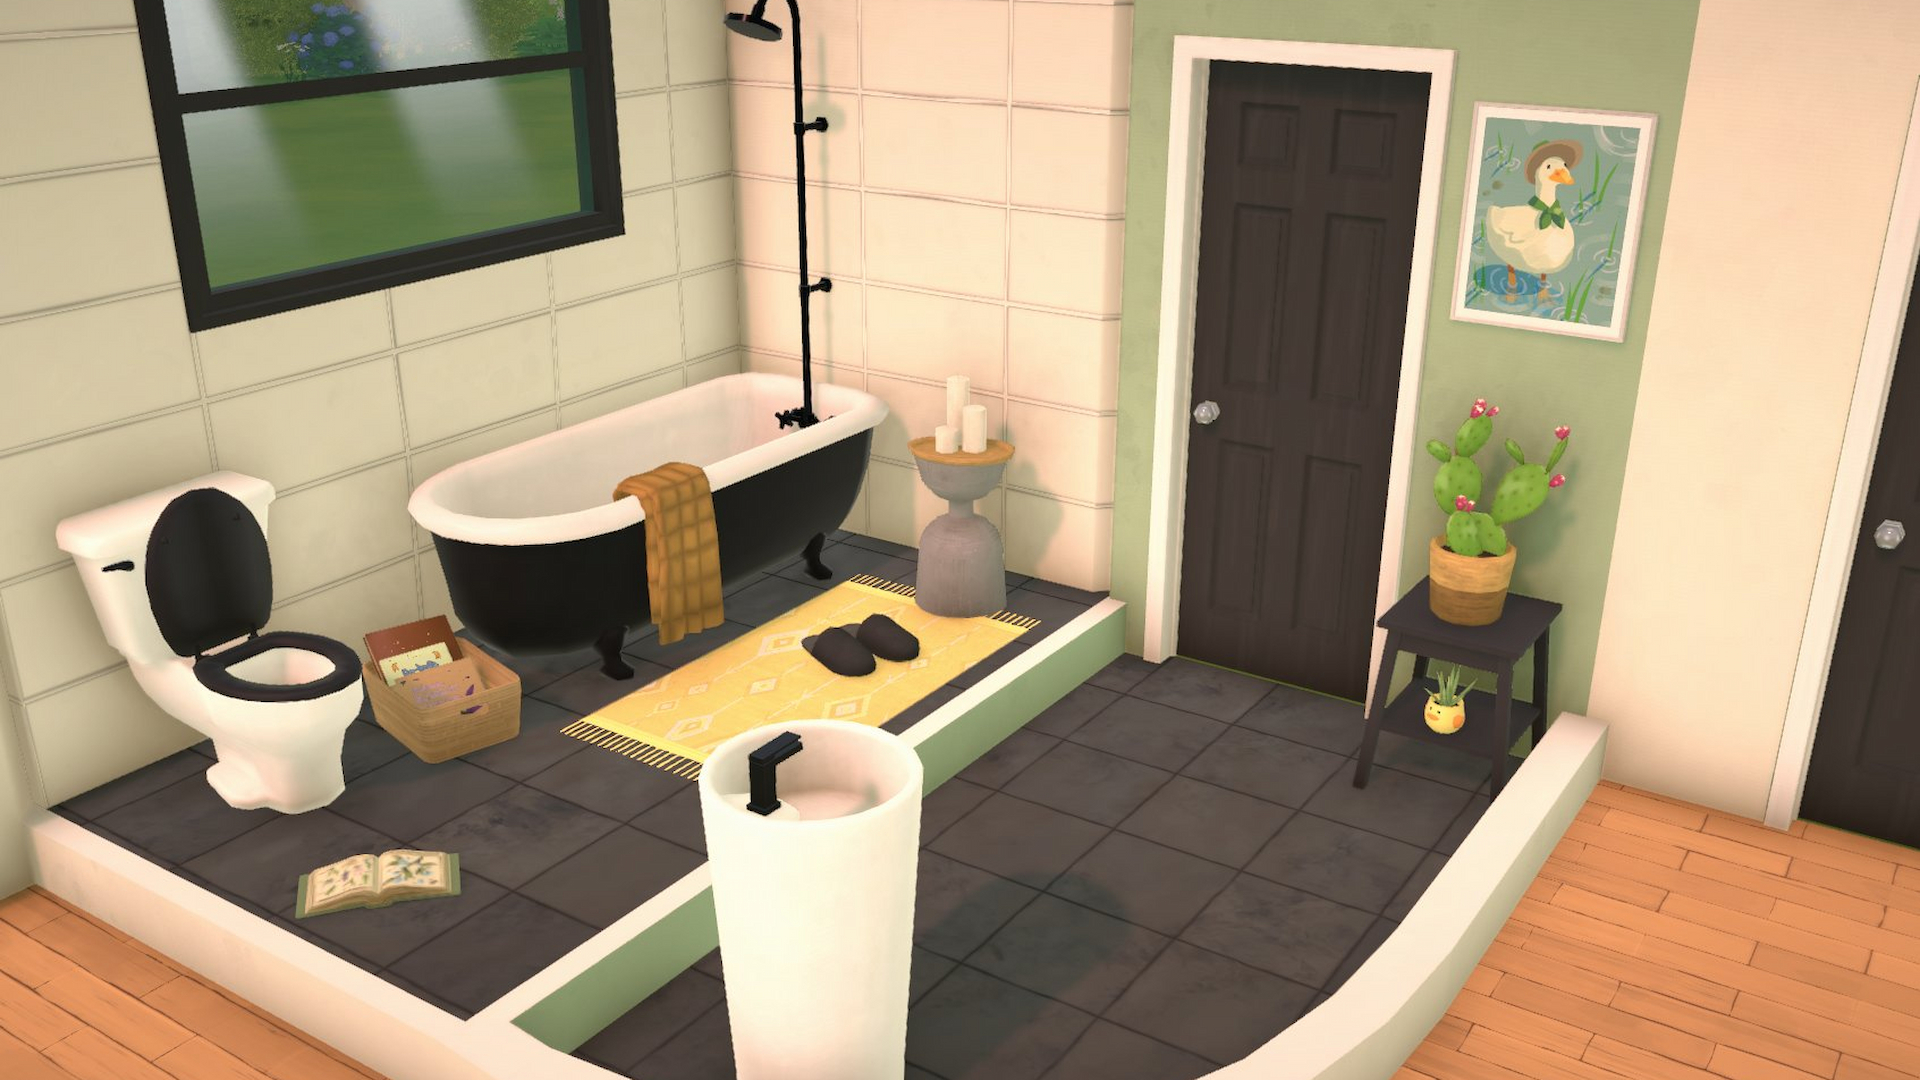 Ein Bild eines Badezimmers von Paralives mit einer schwarzen Tür, schwarzem Fliesenboden, einer schwarz-weißen Badewanne, einem weißen Waschbecken mit schwarzem Wasserhahn und einer Toilette